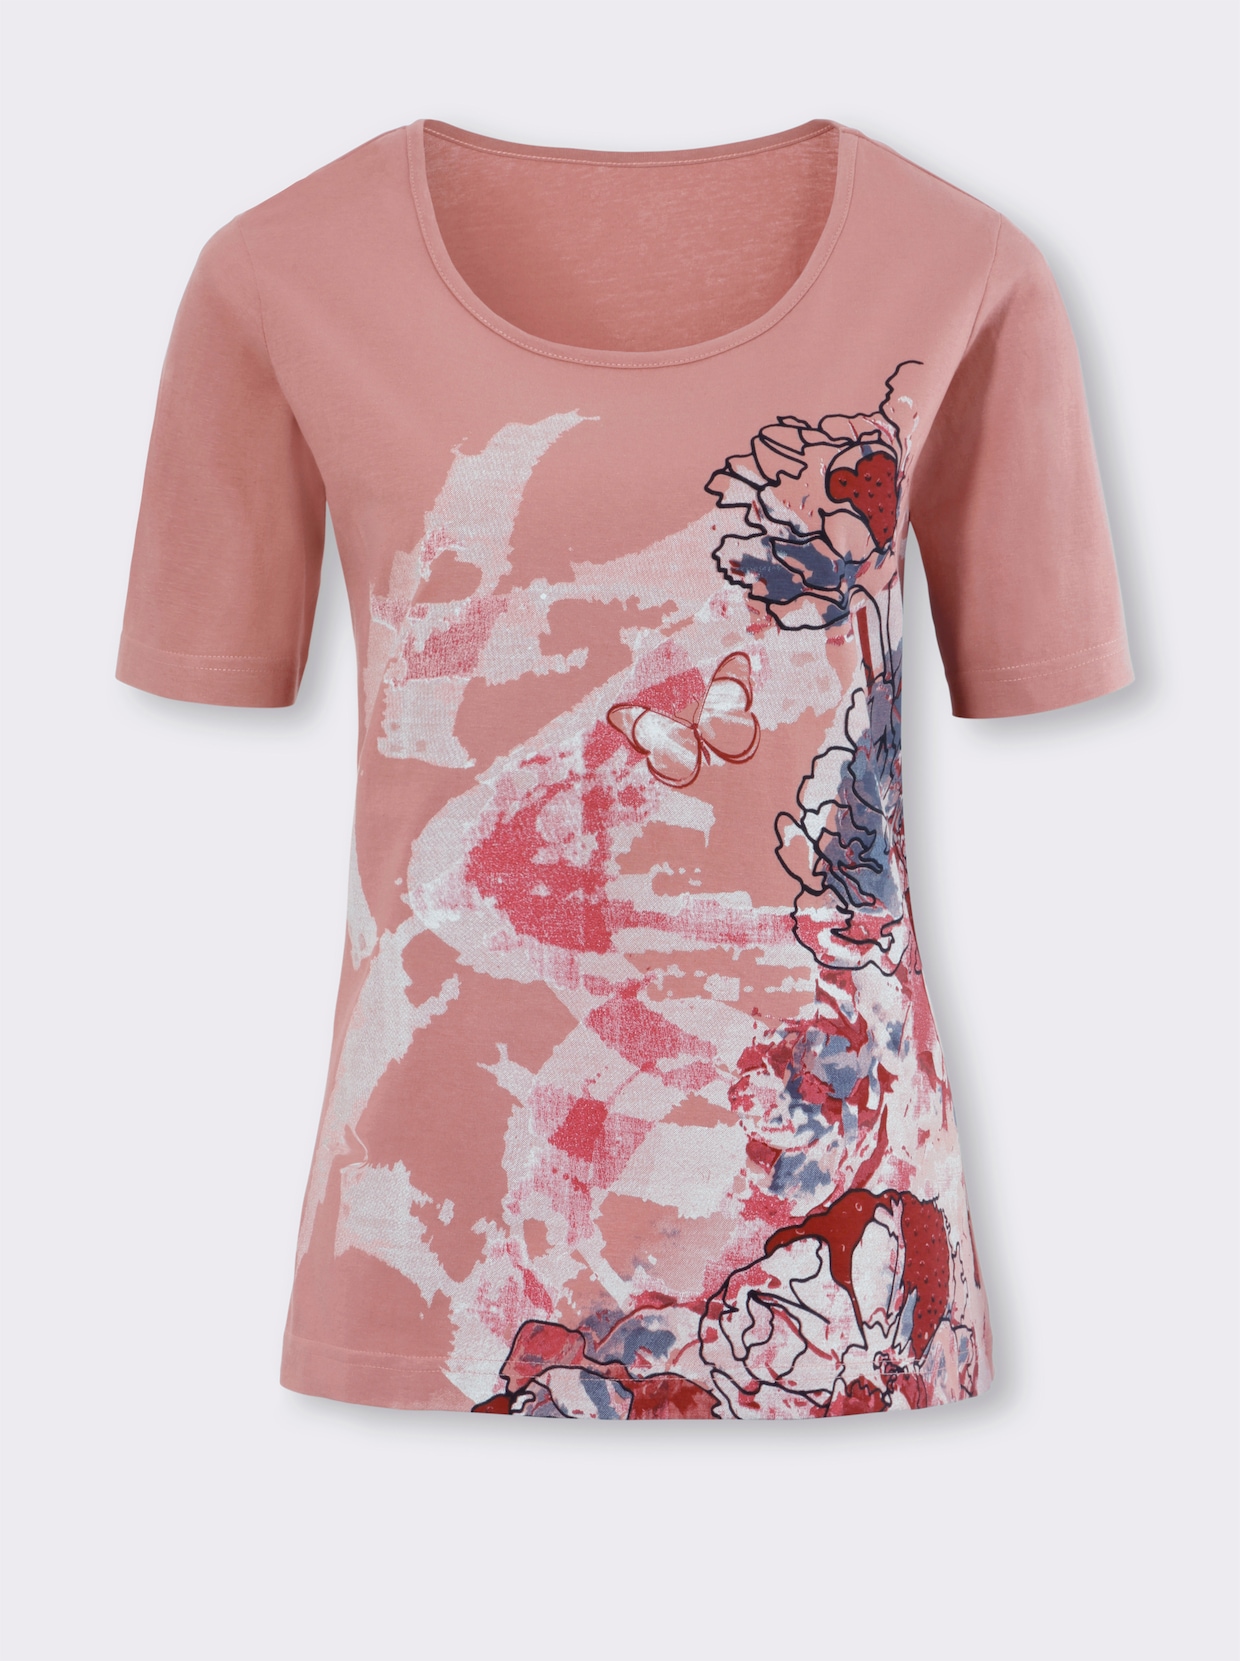 Tričko s krátkým rukávem - růžové dřevo-vzor